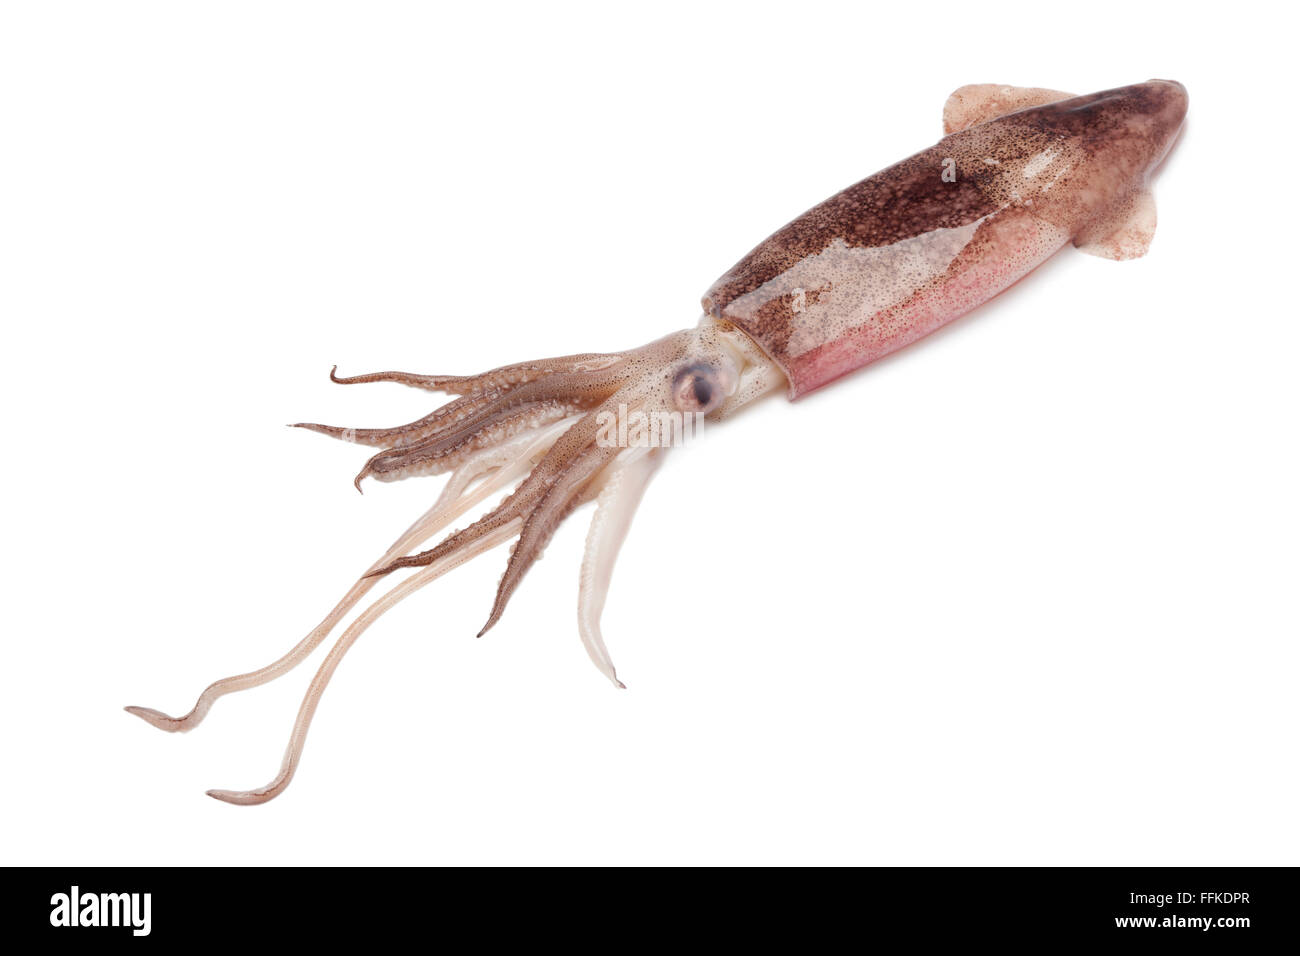 Whole single fresh raw calamari on white background Stock Photo